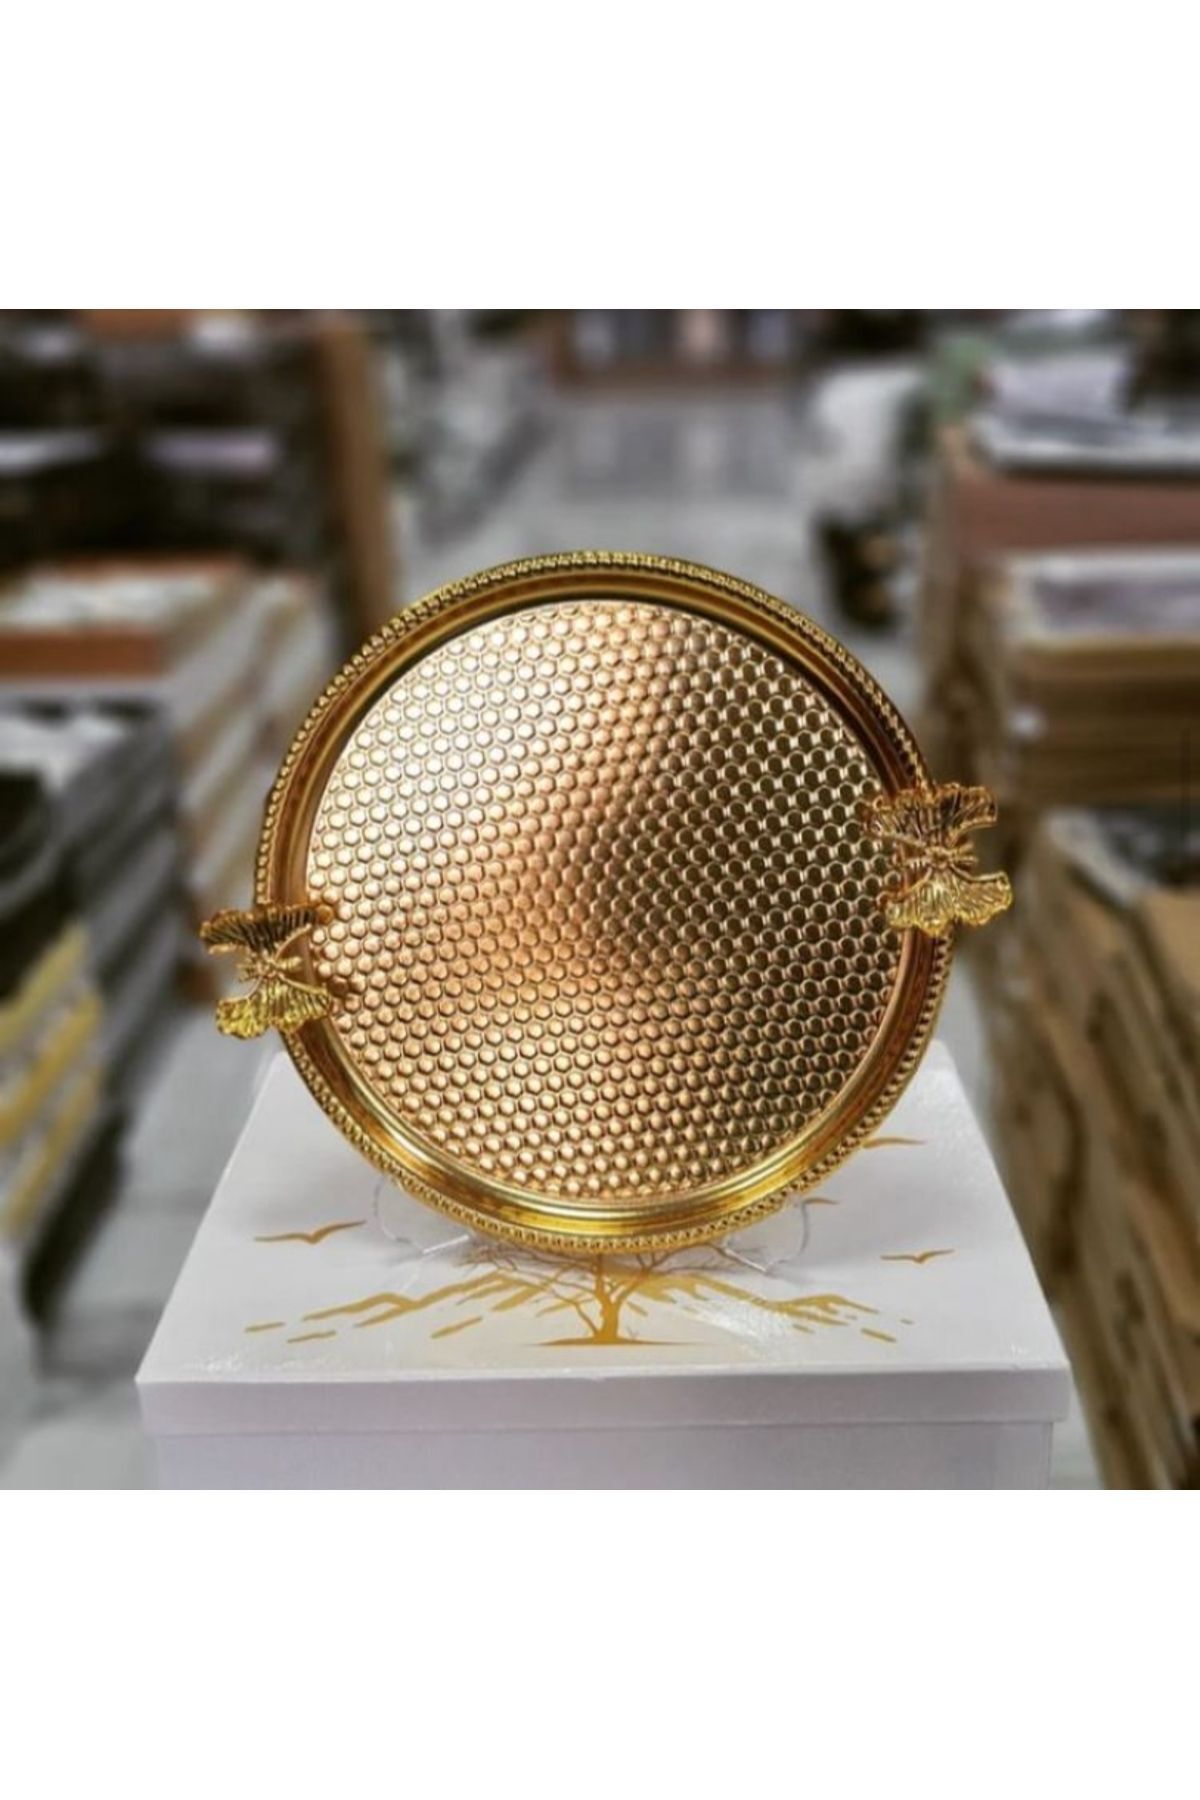 RA KİTCHEN 6'lı Kelebekli Yuvarlak Desenli Gold Sunum , Dekoratif Servis Tepsisi, Çay, Pasta Kahve 22cm